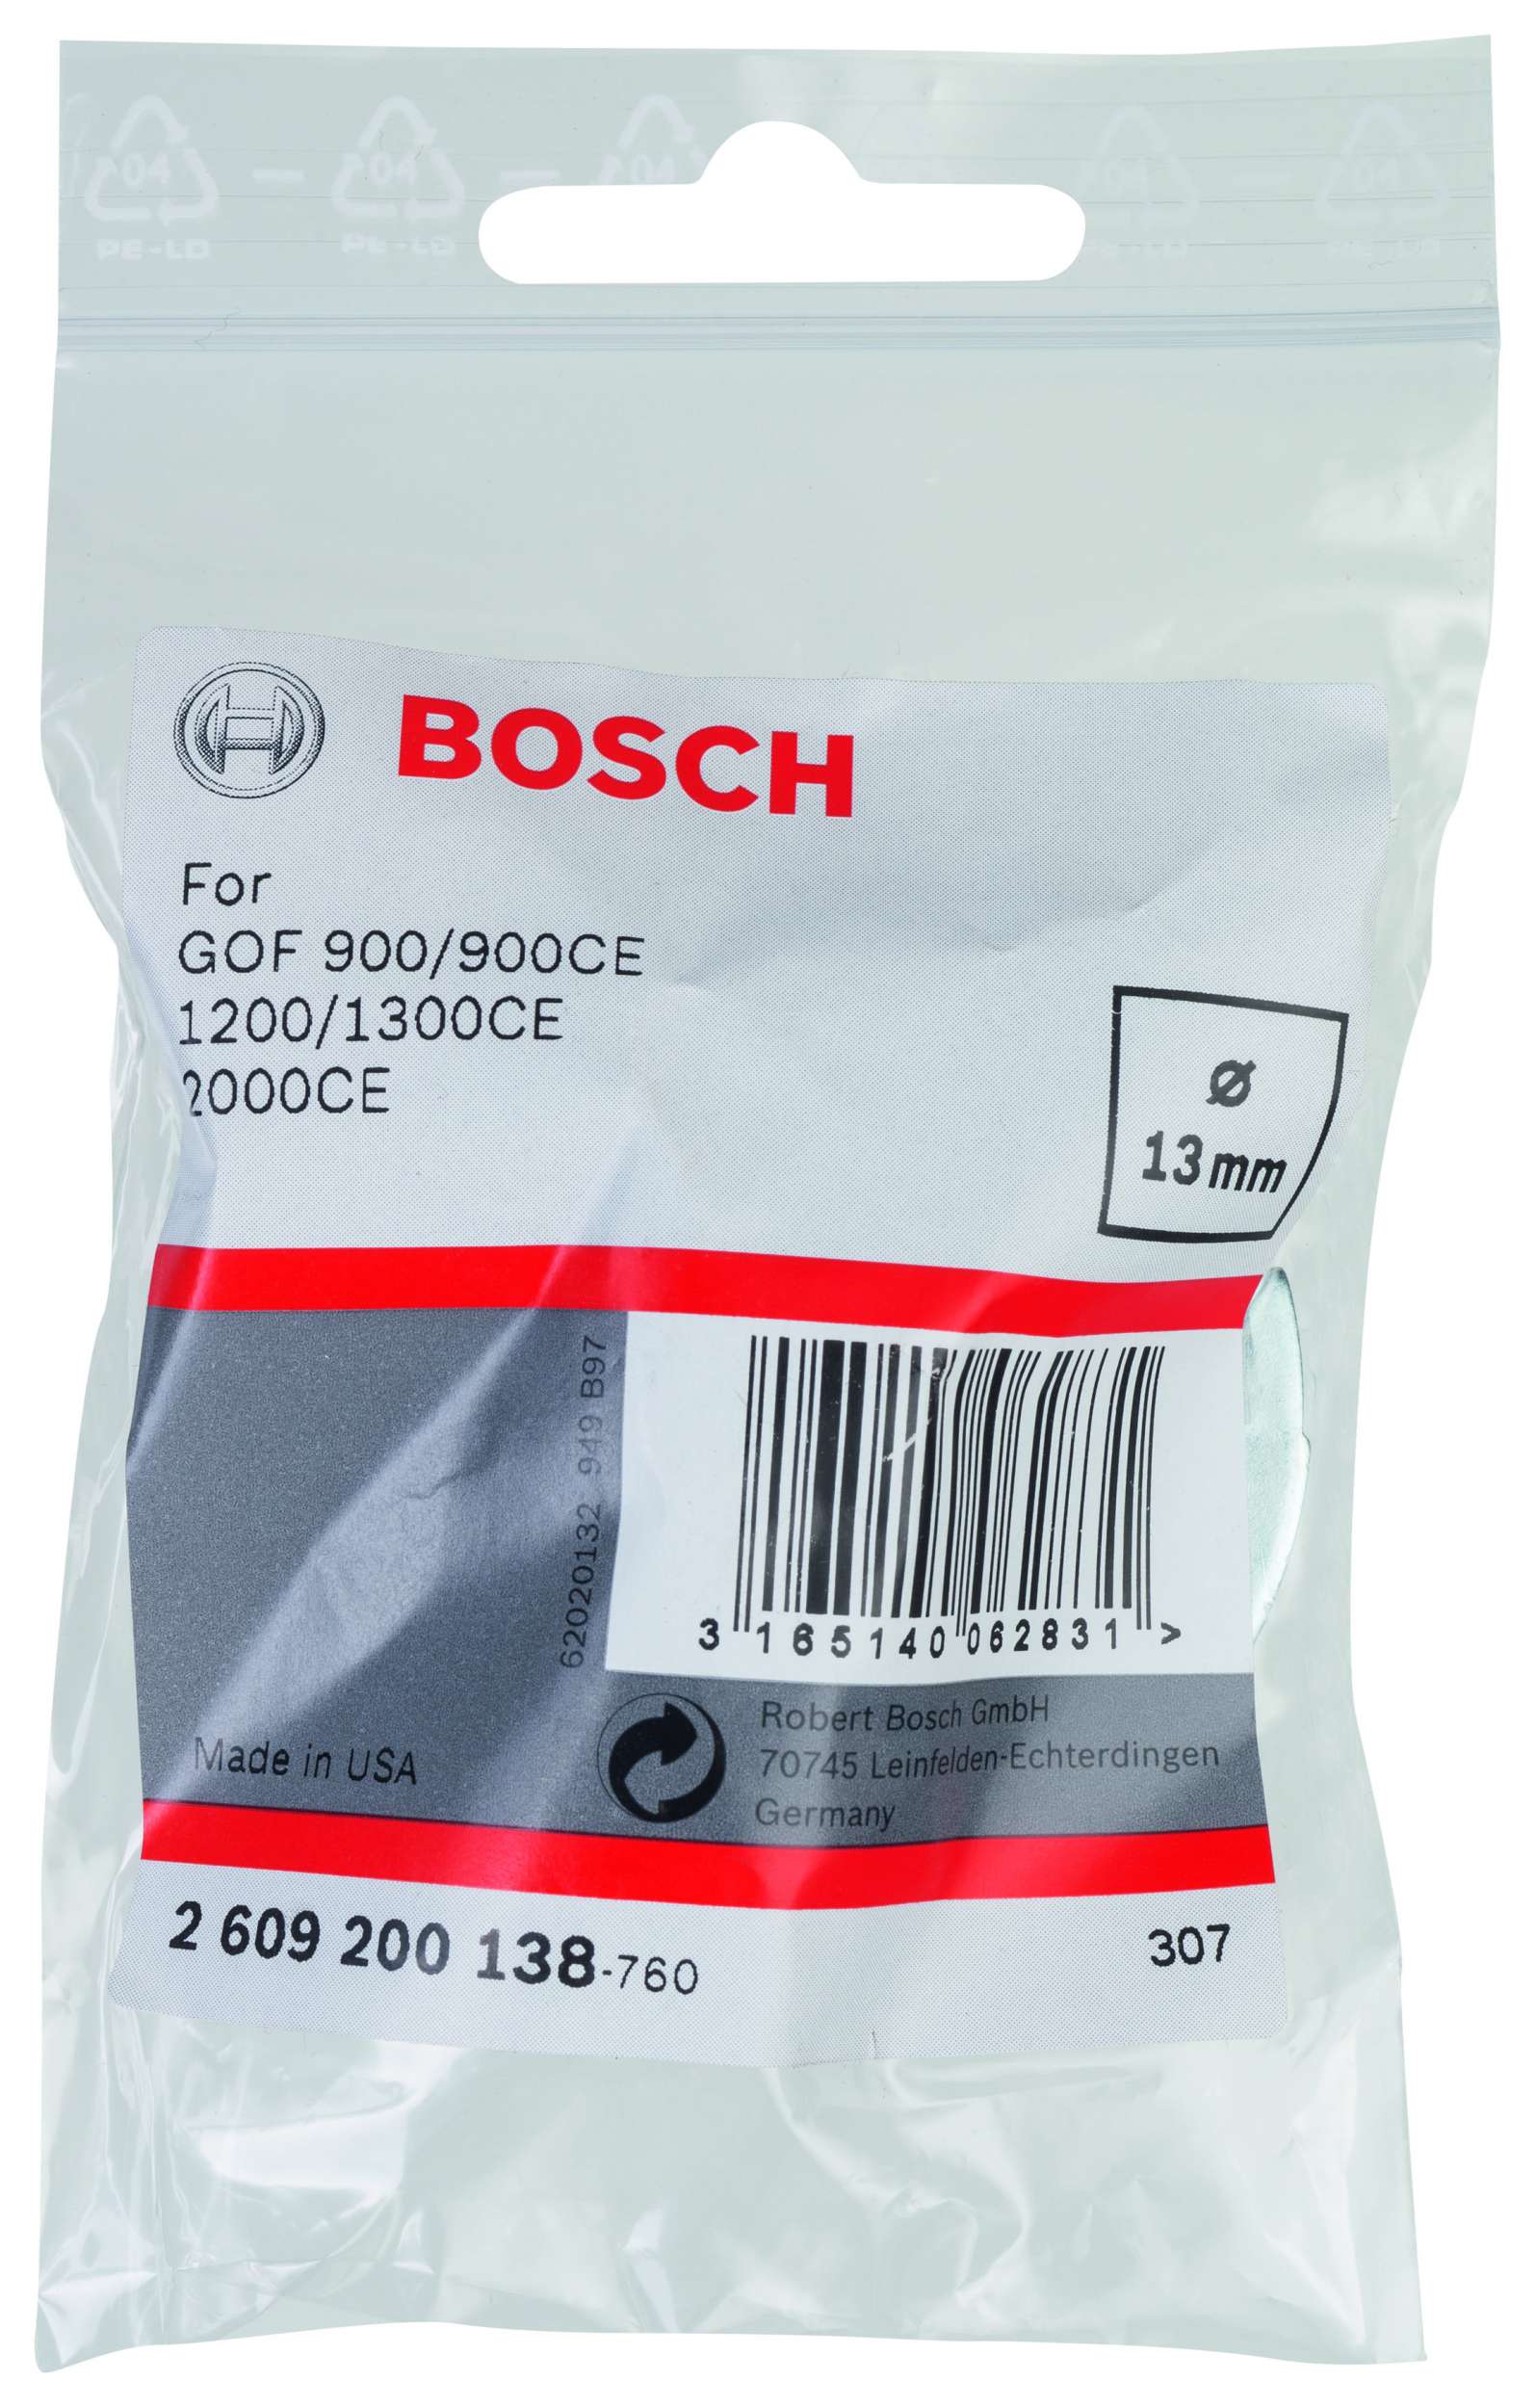 Bosch - Freze Kopyalama Sablonu 13 mm